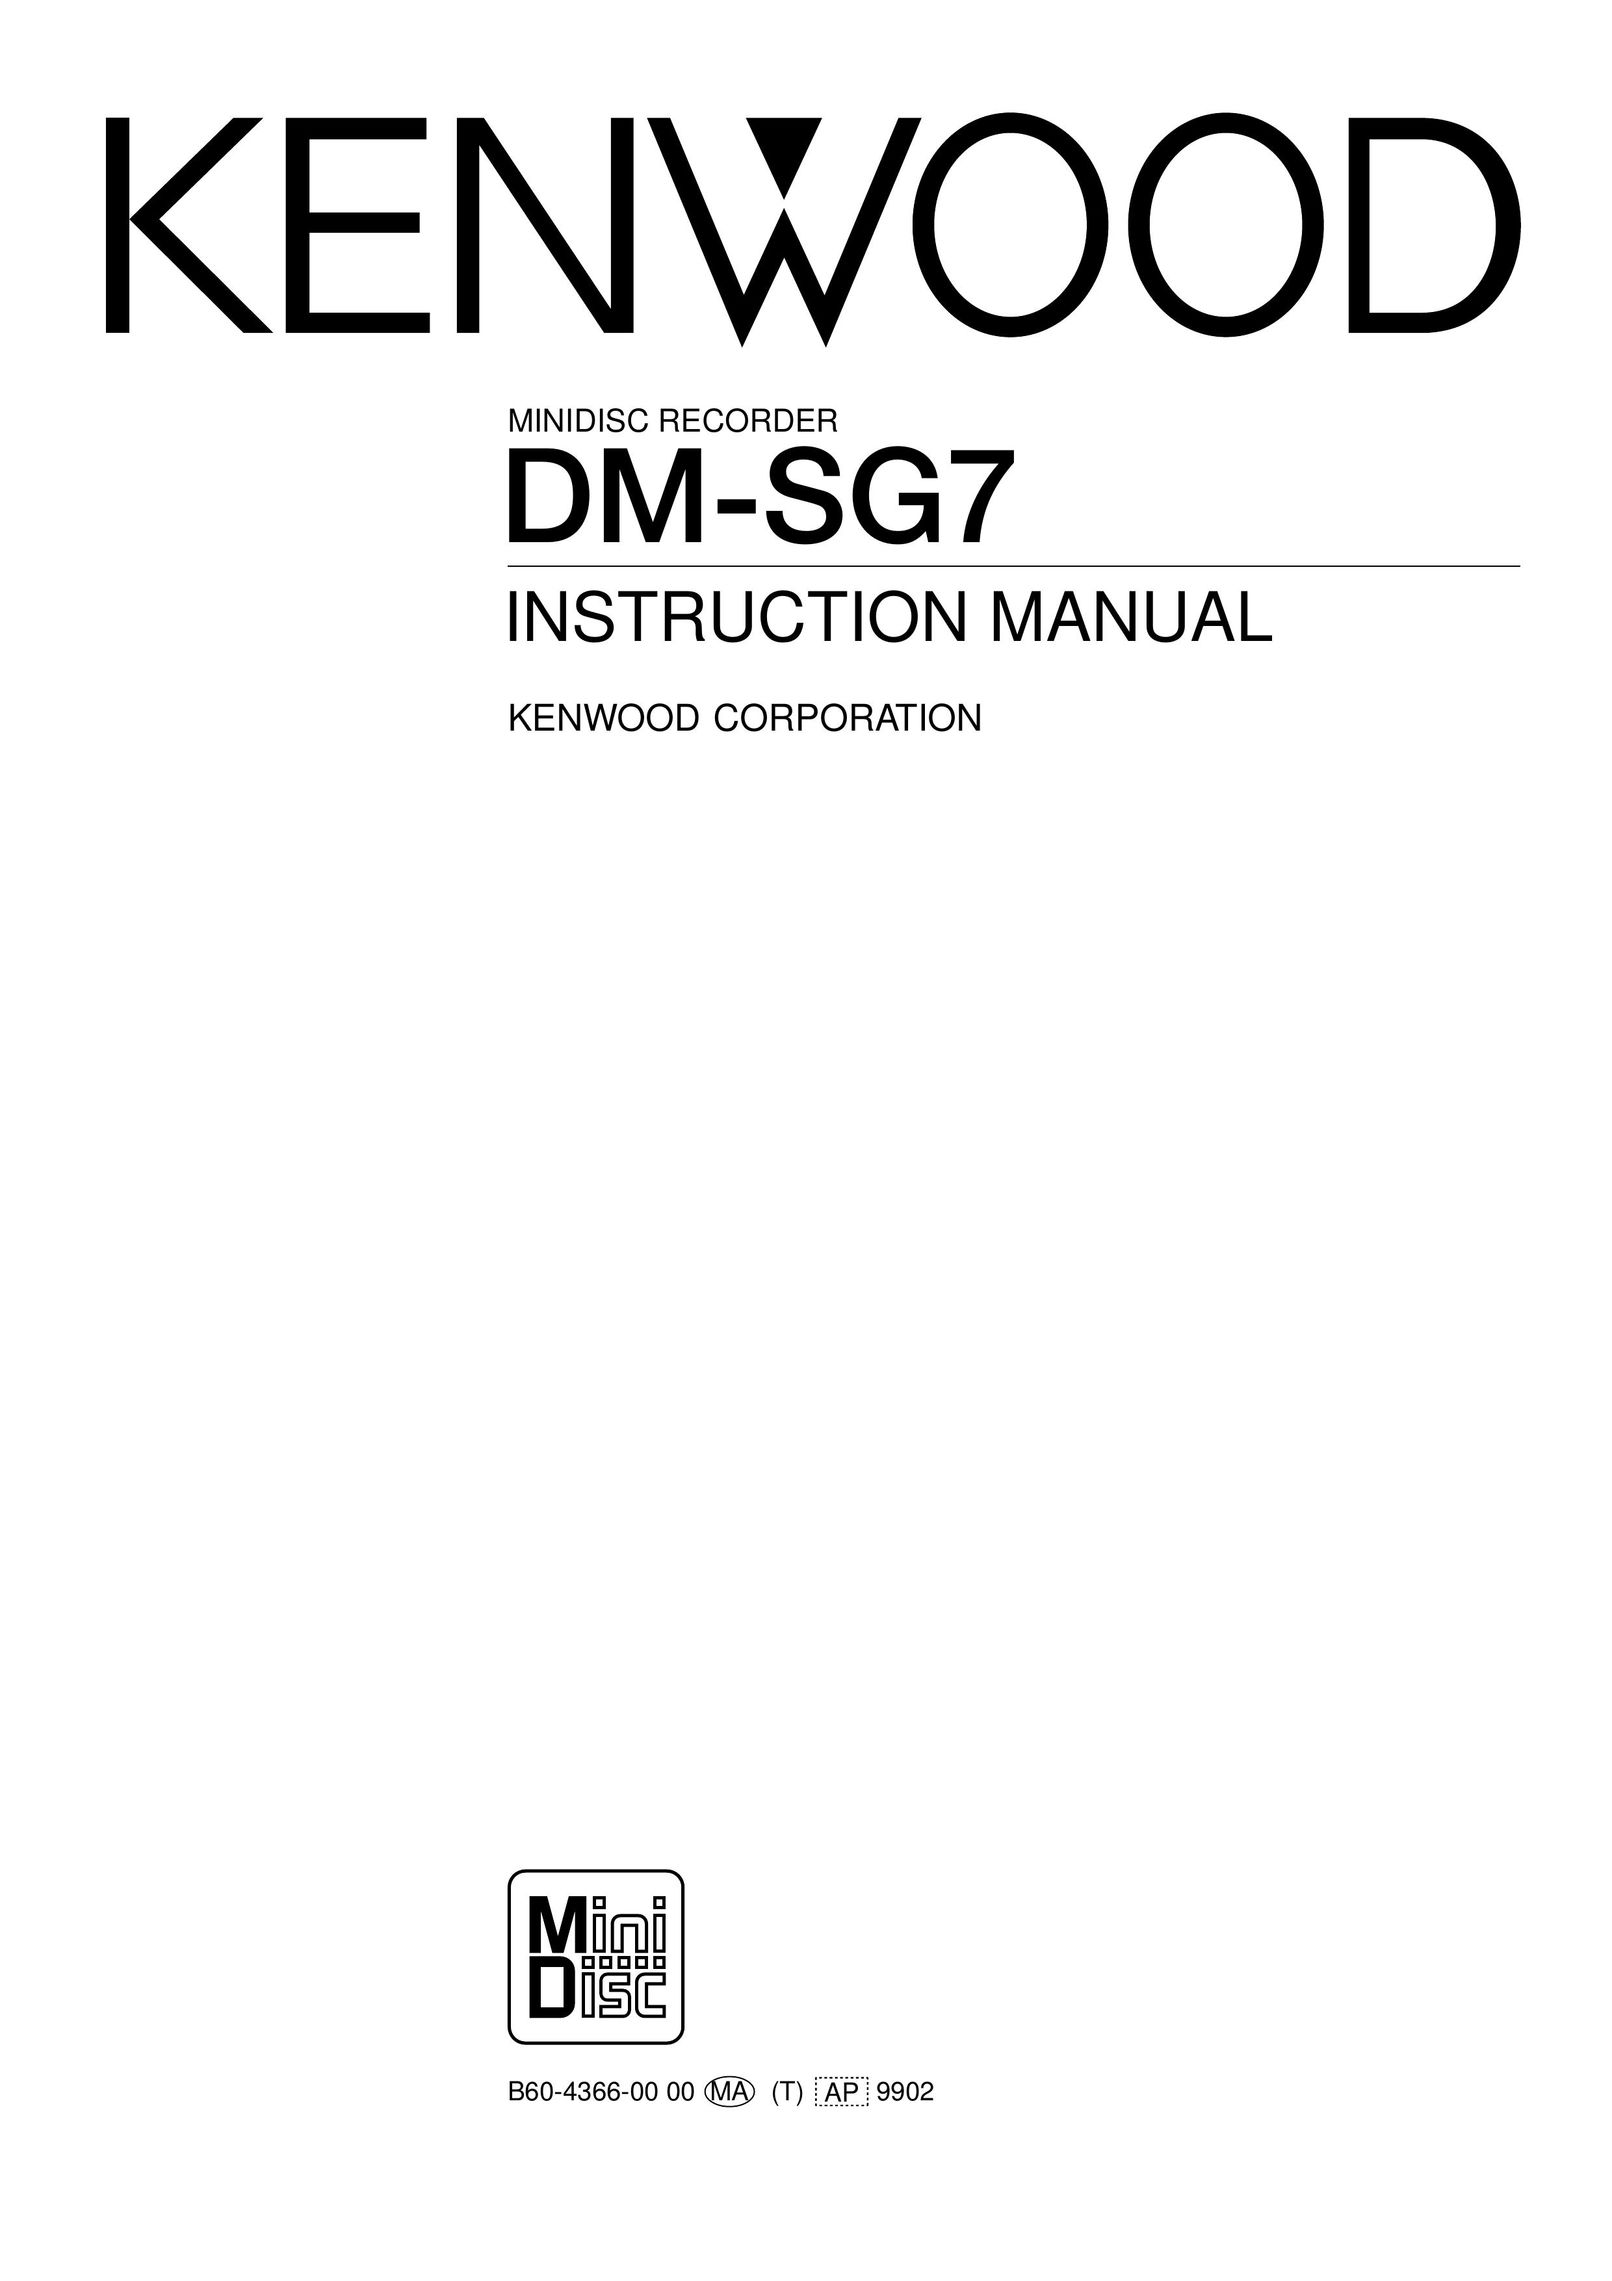 Kenwood DM-SG7 DVD Recorder User Manual